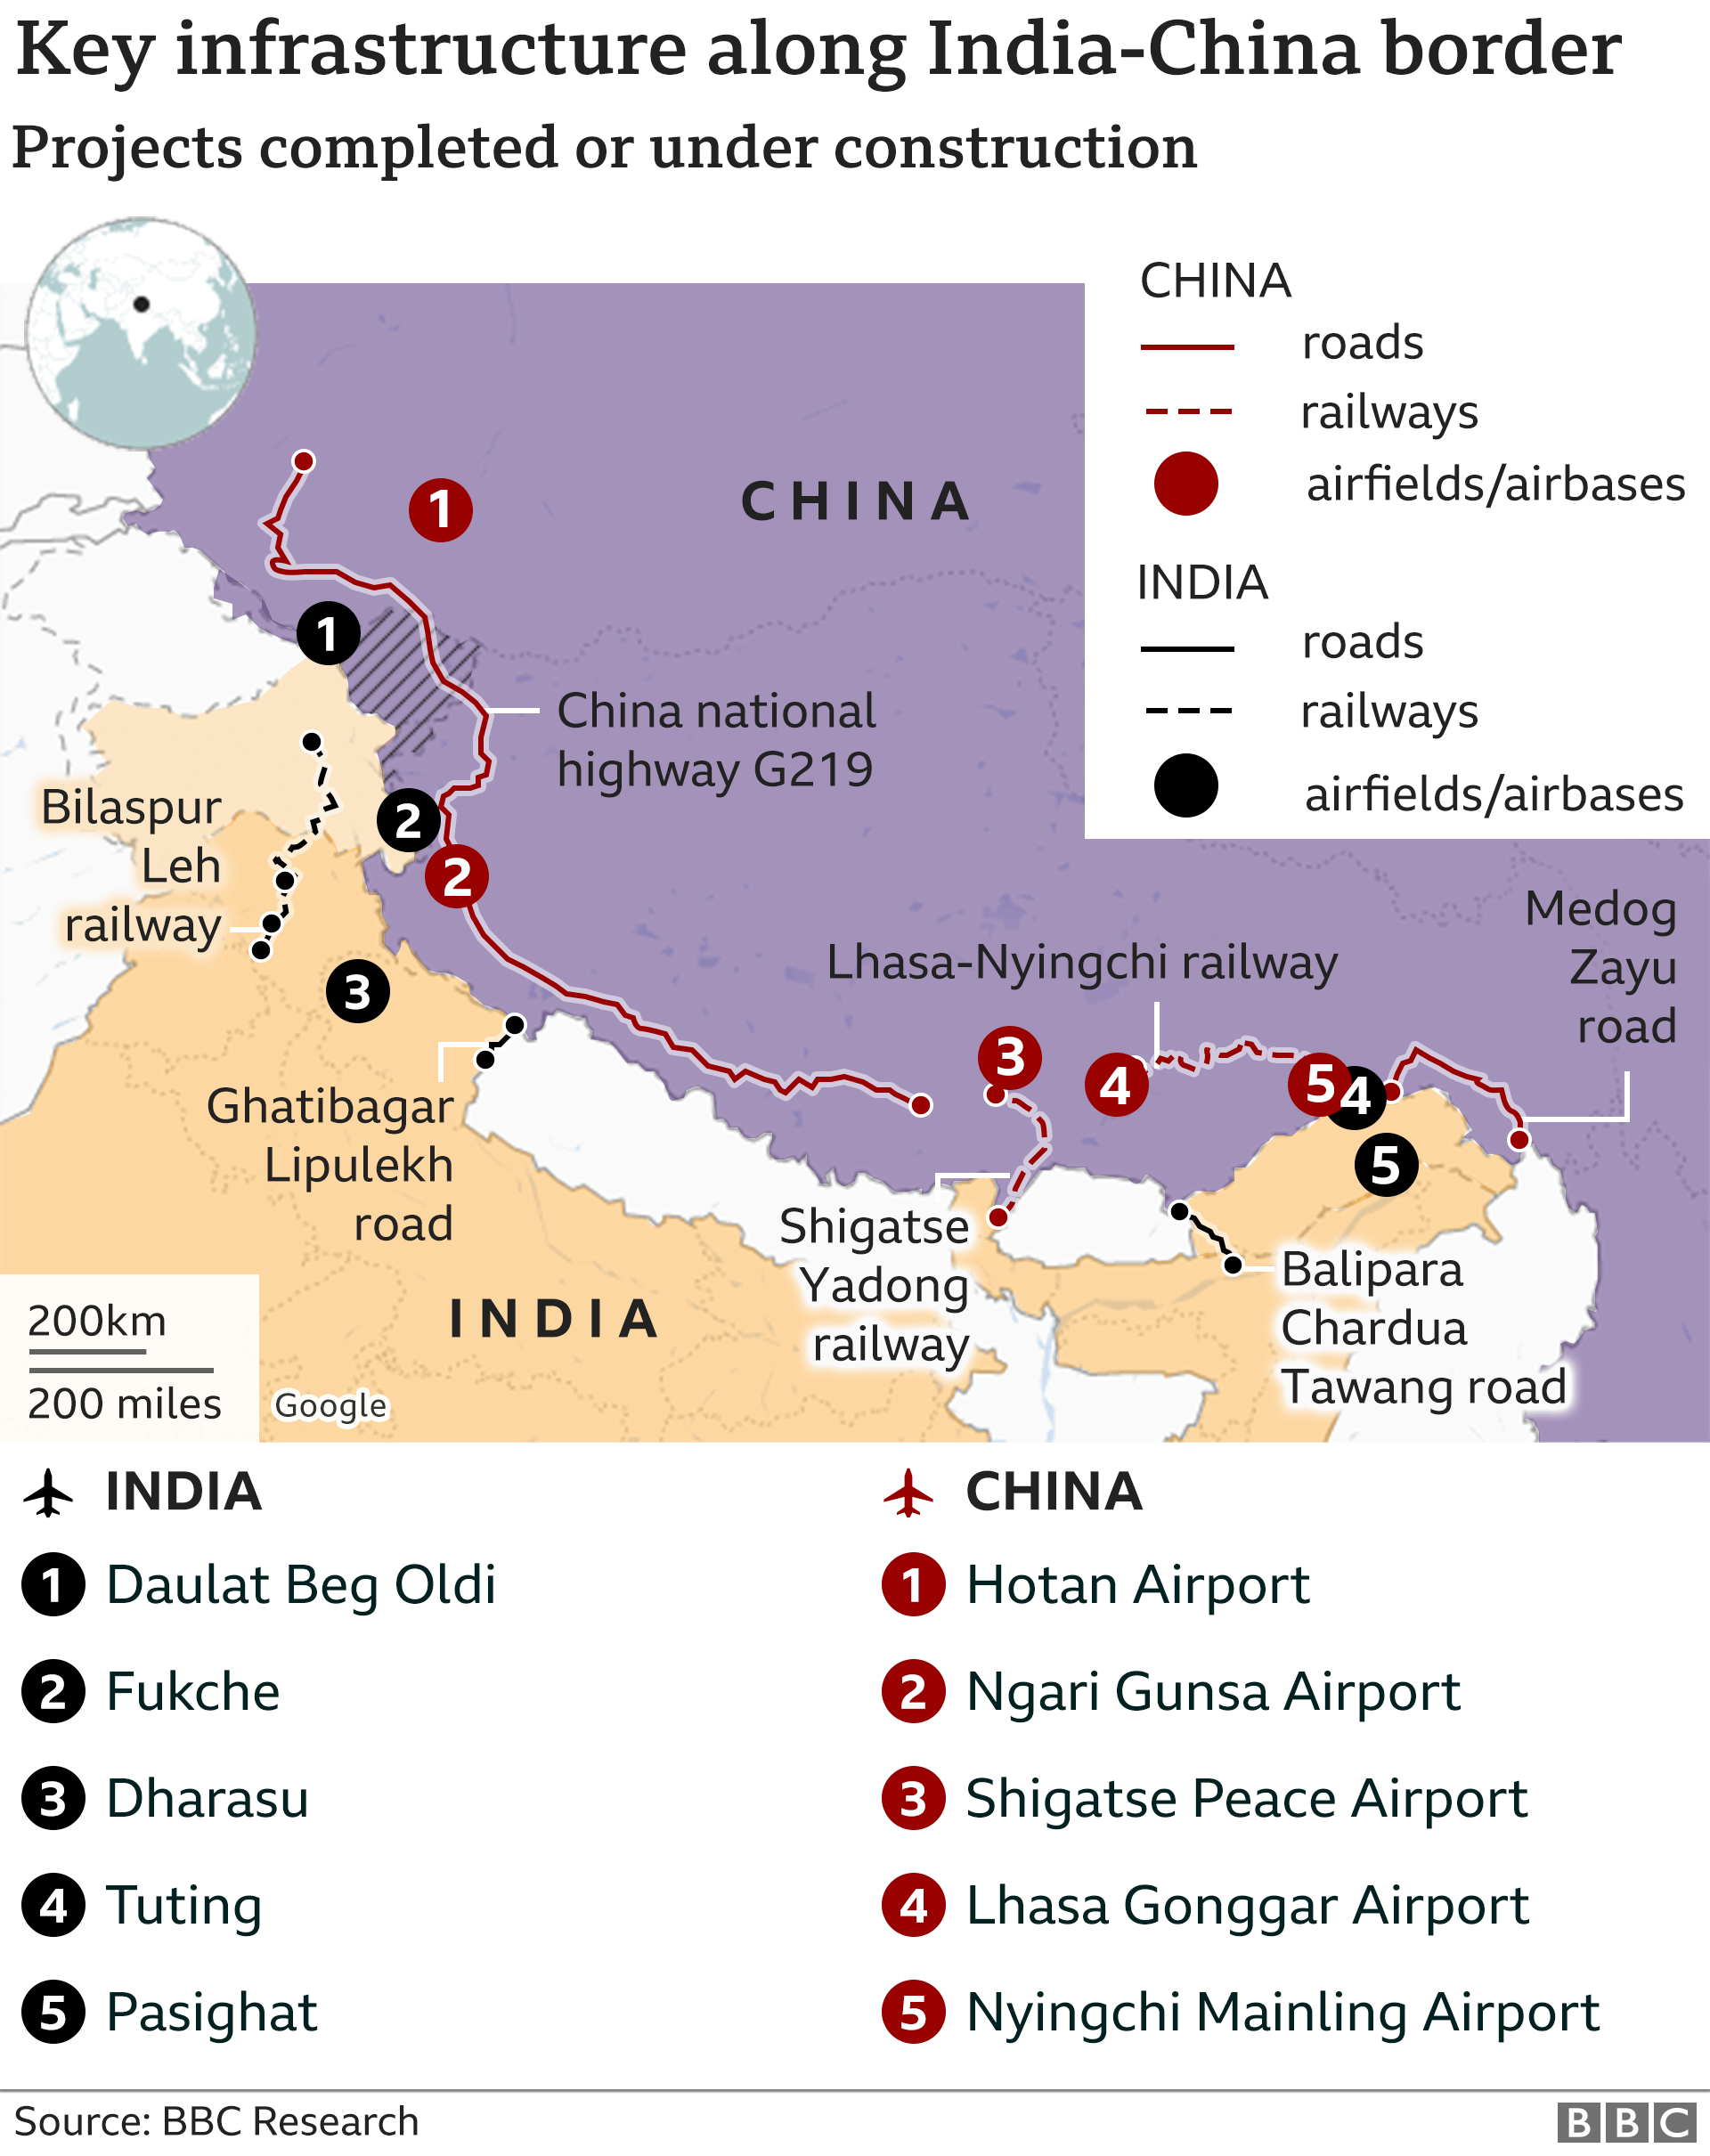 Infraestructura clave a lo largo de la frontera chino-india 